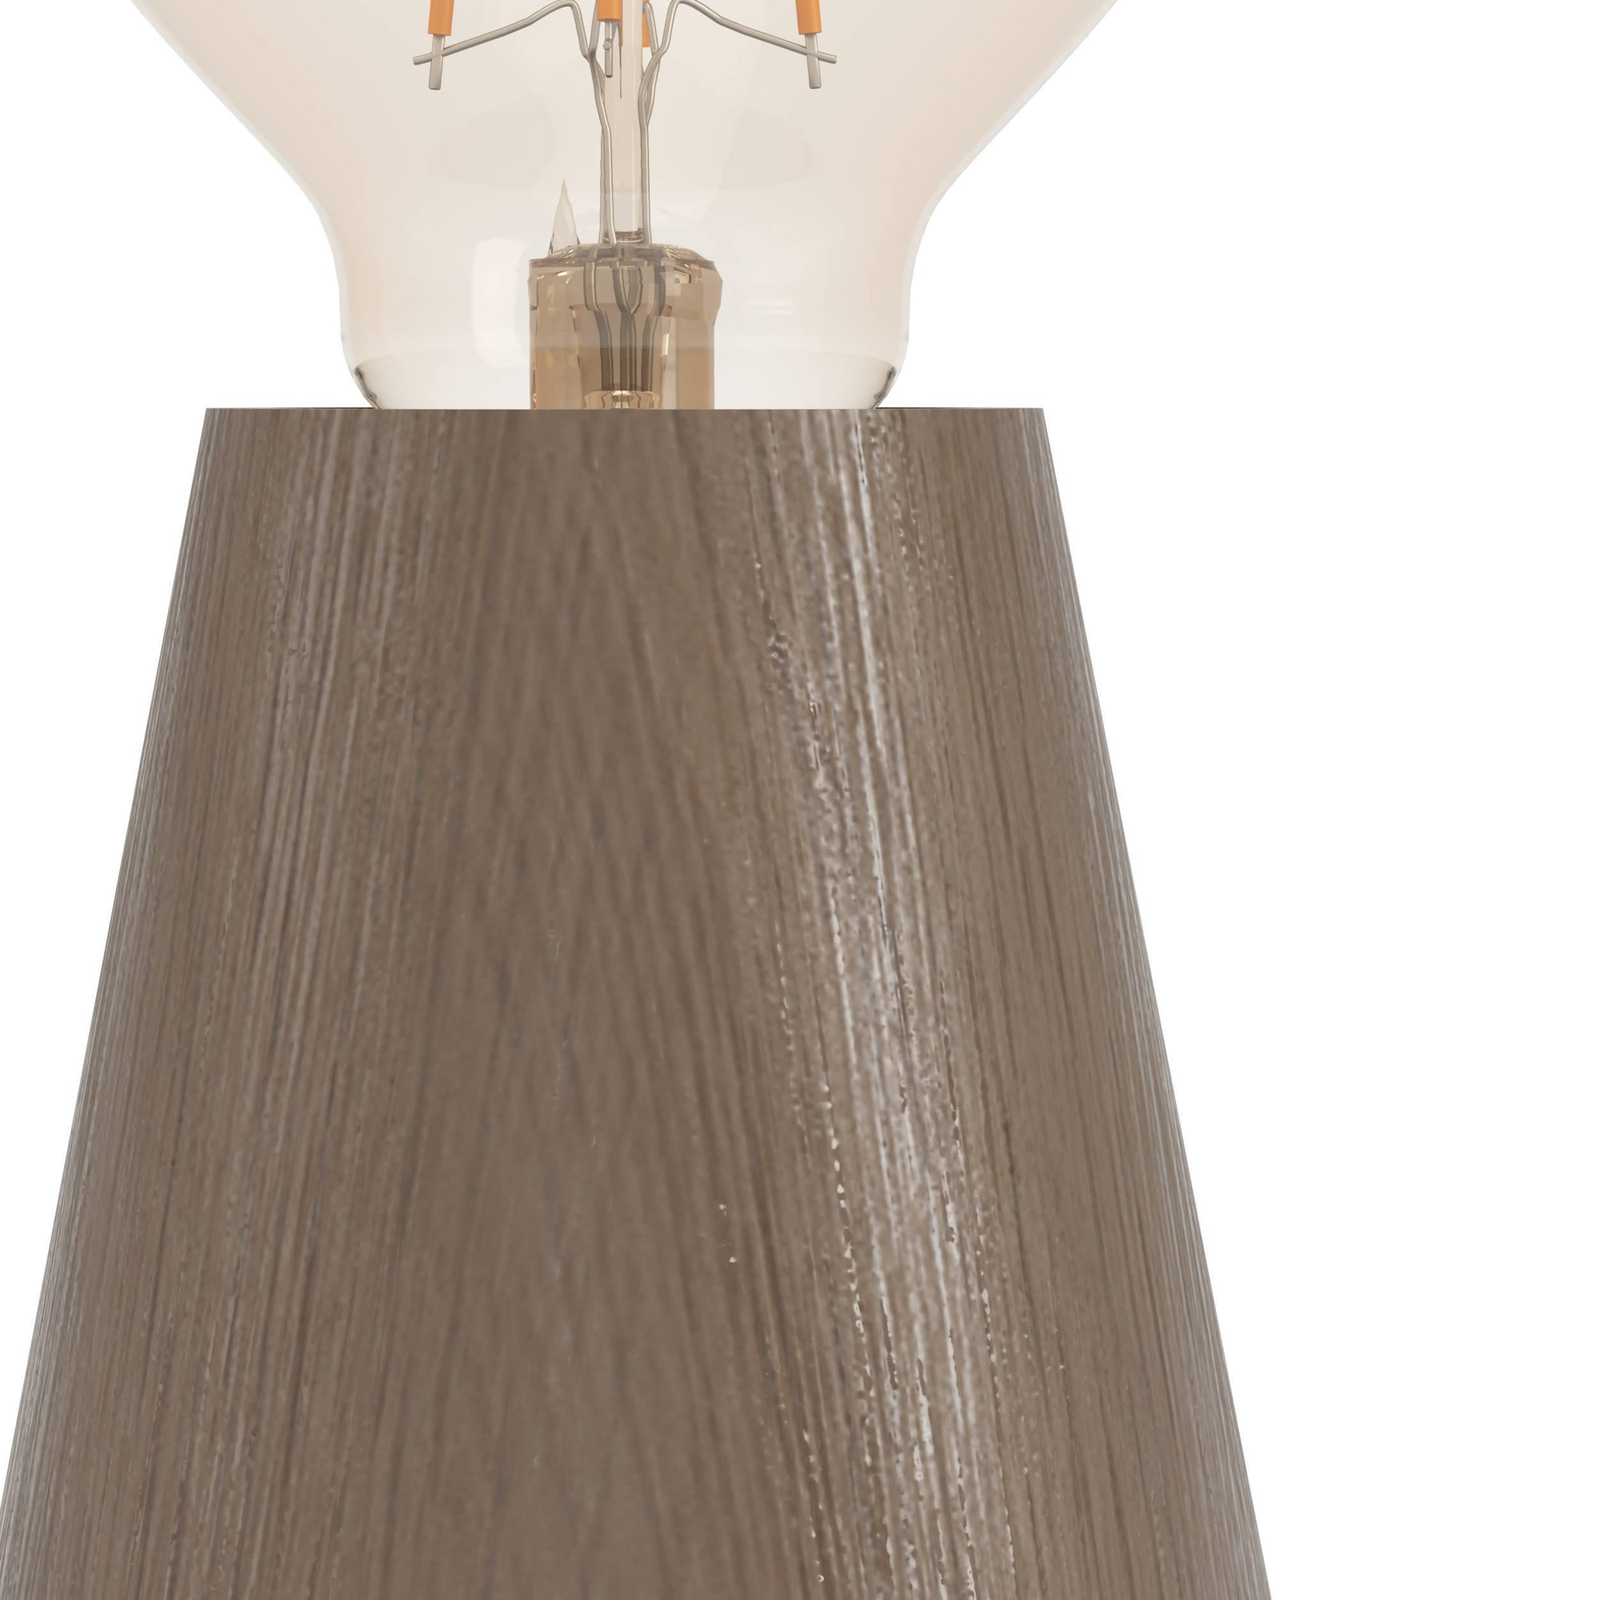 Stolná lampa Asby, tmavé drevo, výška 10 cm, drevo